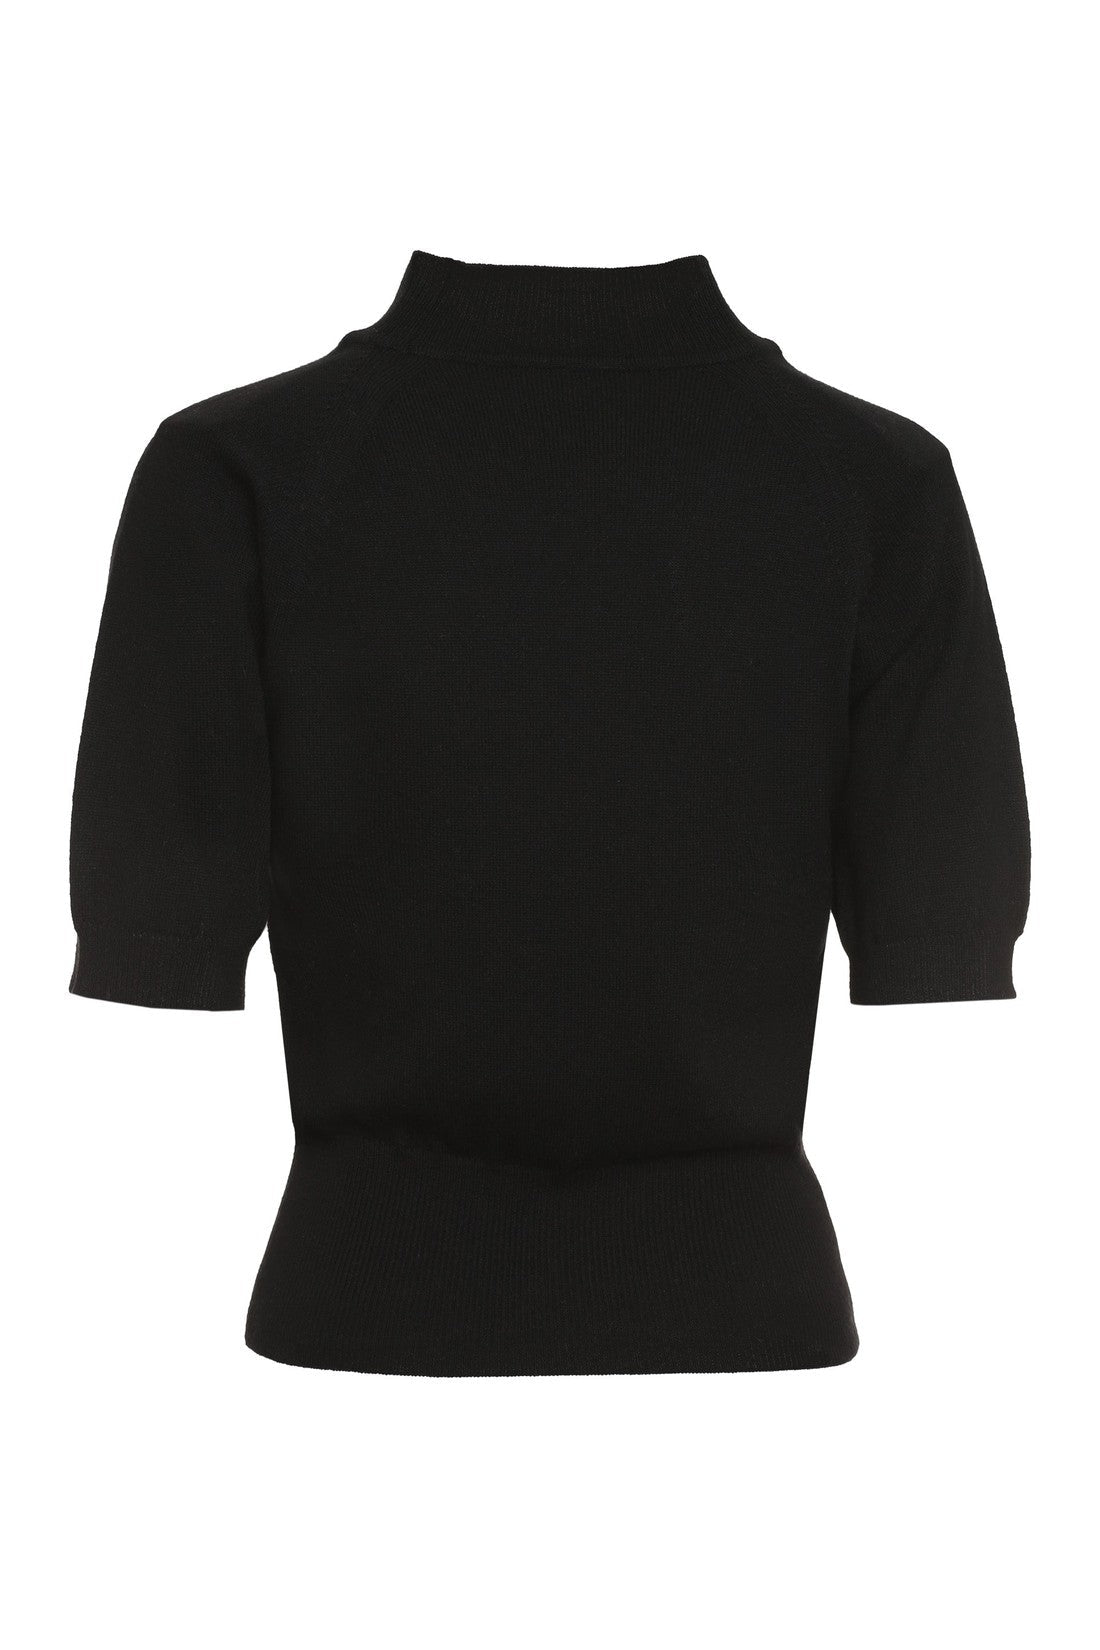 Vivienne Westwood-OUTLET-SALE-Bea turtleneck sweater-ARCHIVIST